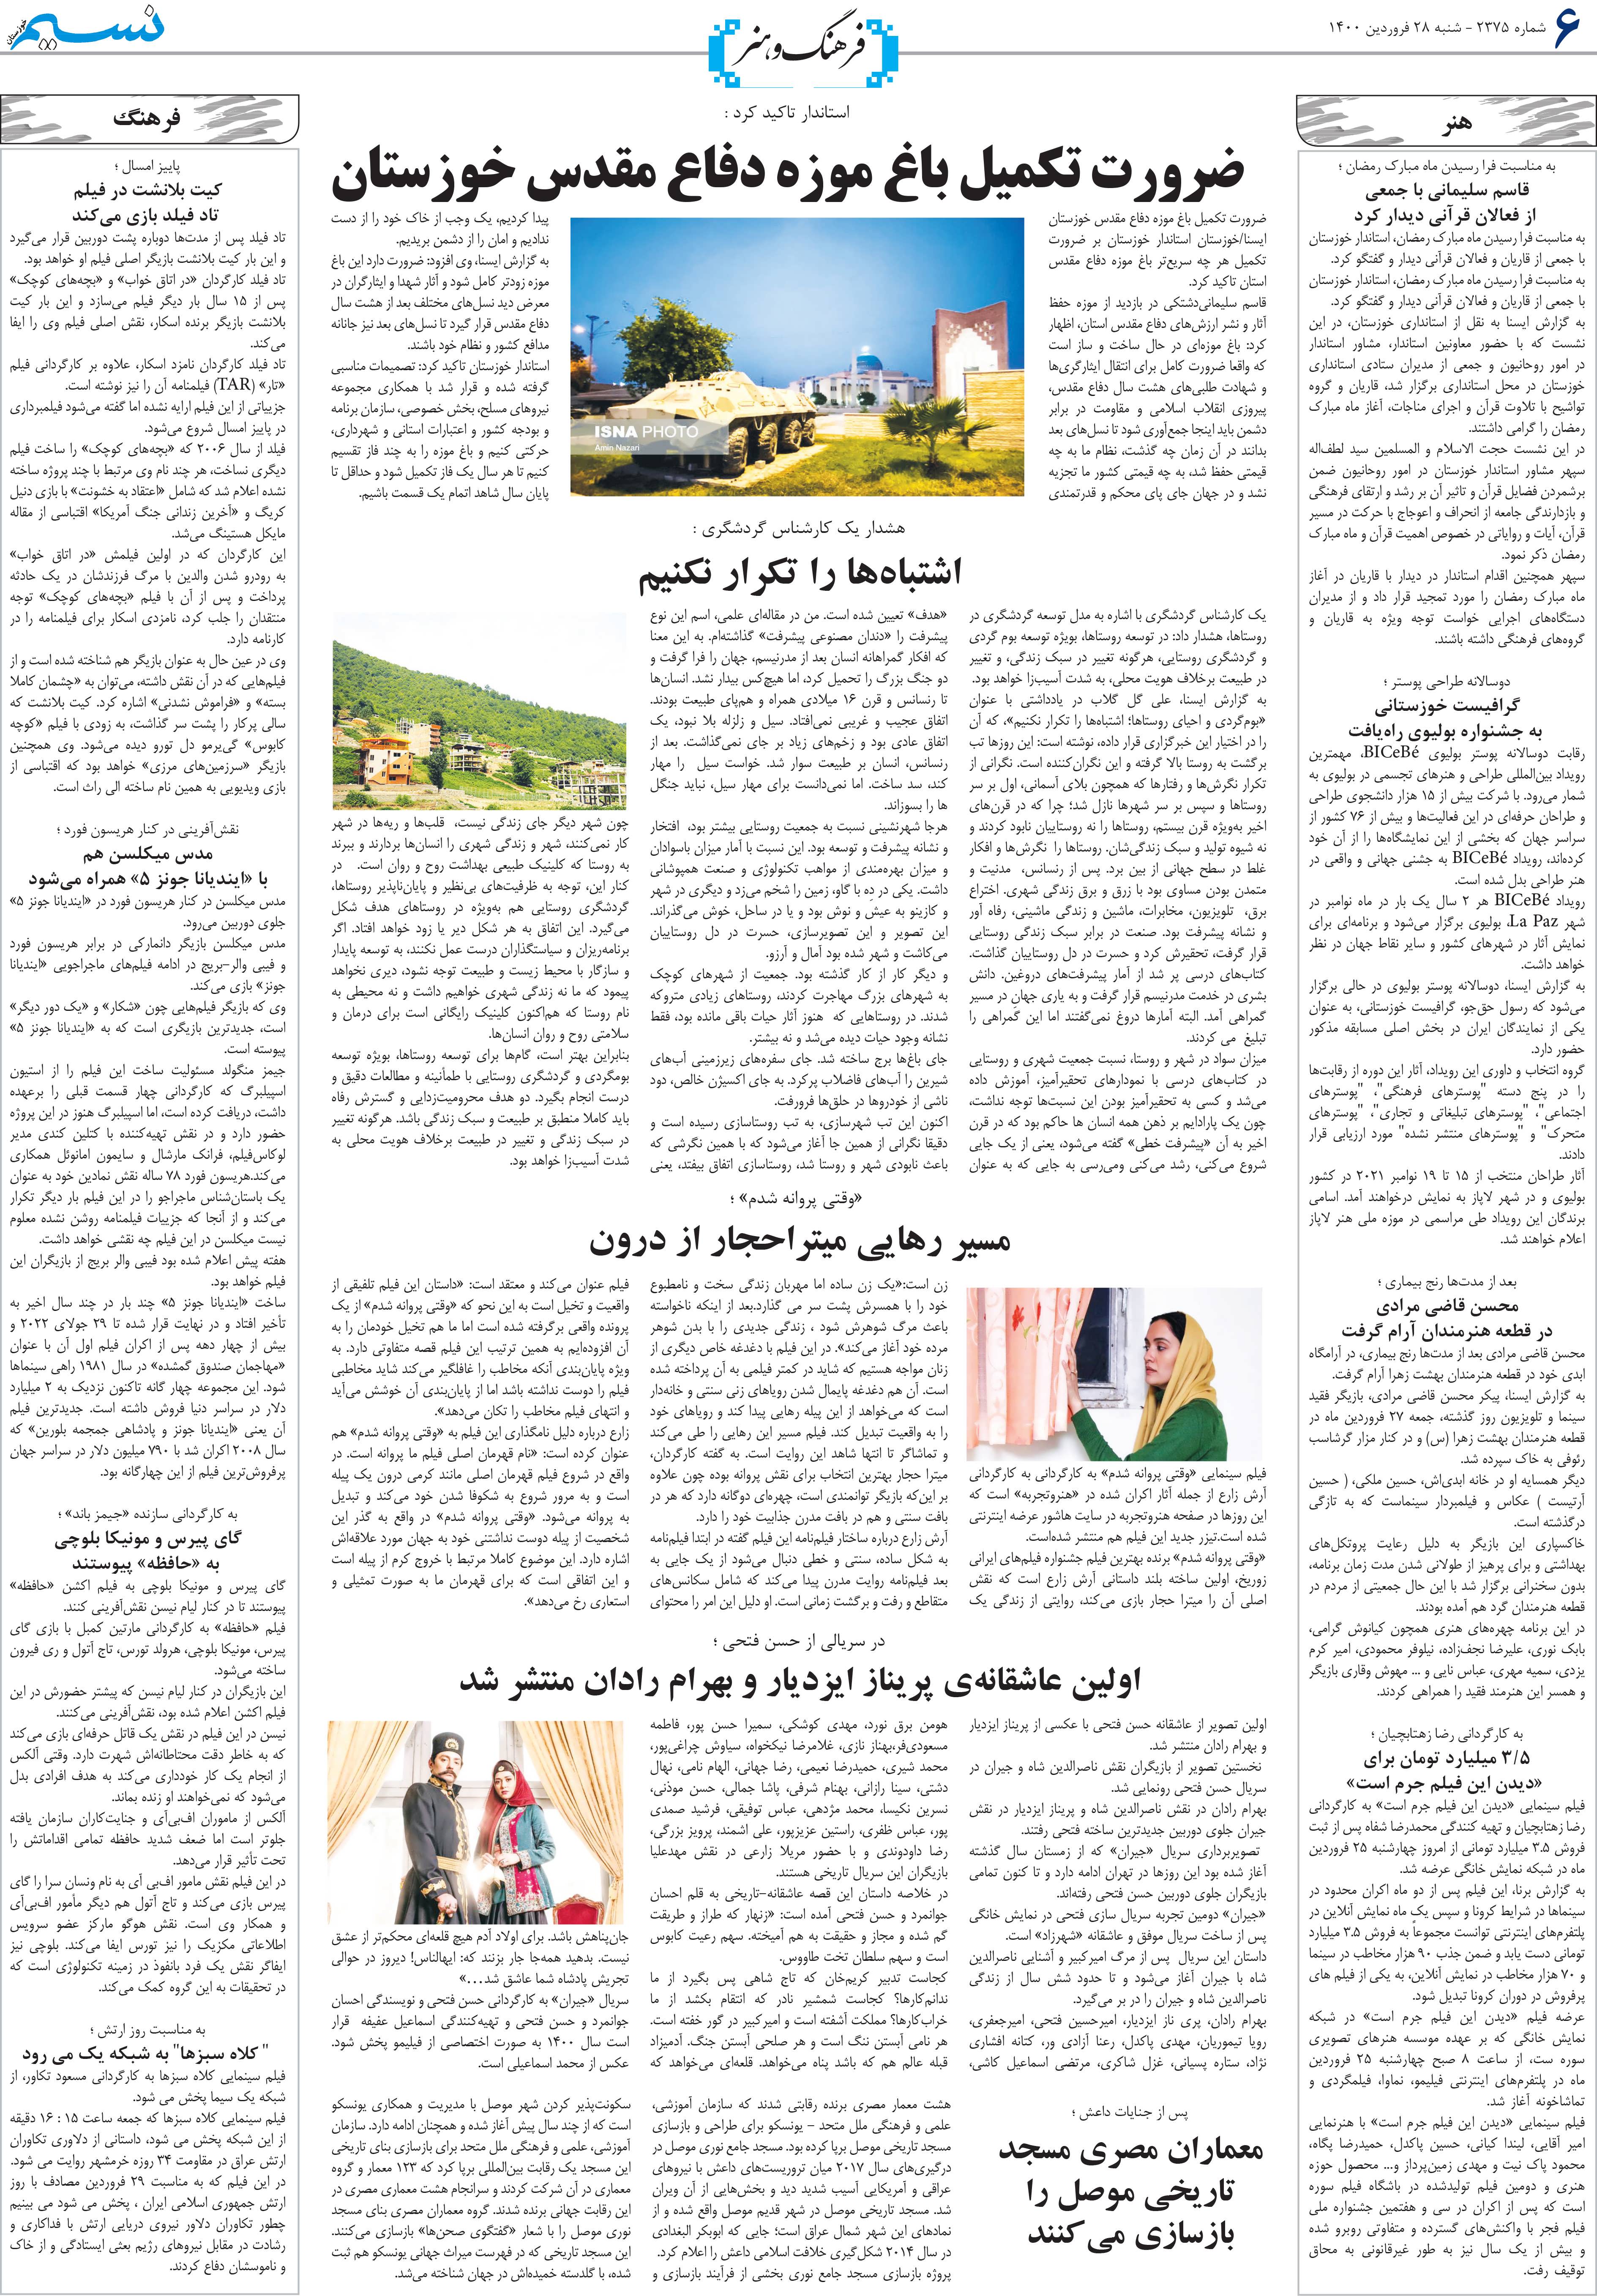 صفحه فرهنگ و هنر روزنامه نسیم شماره 2375